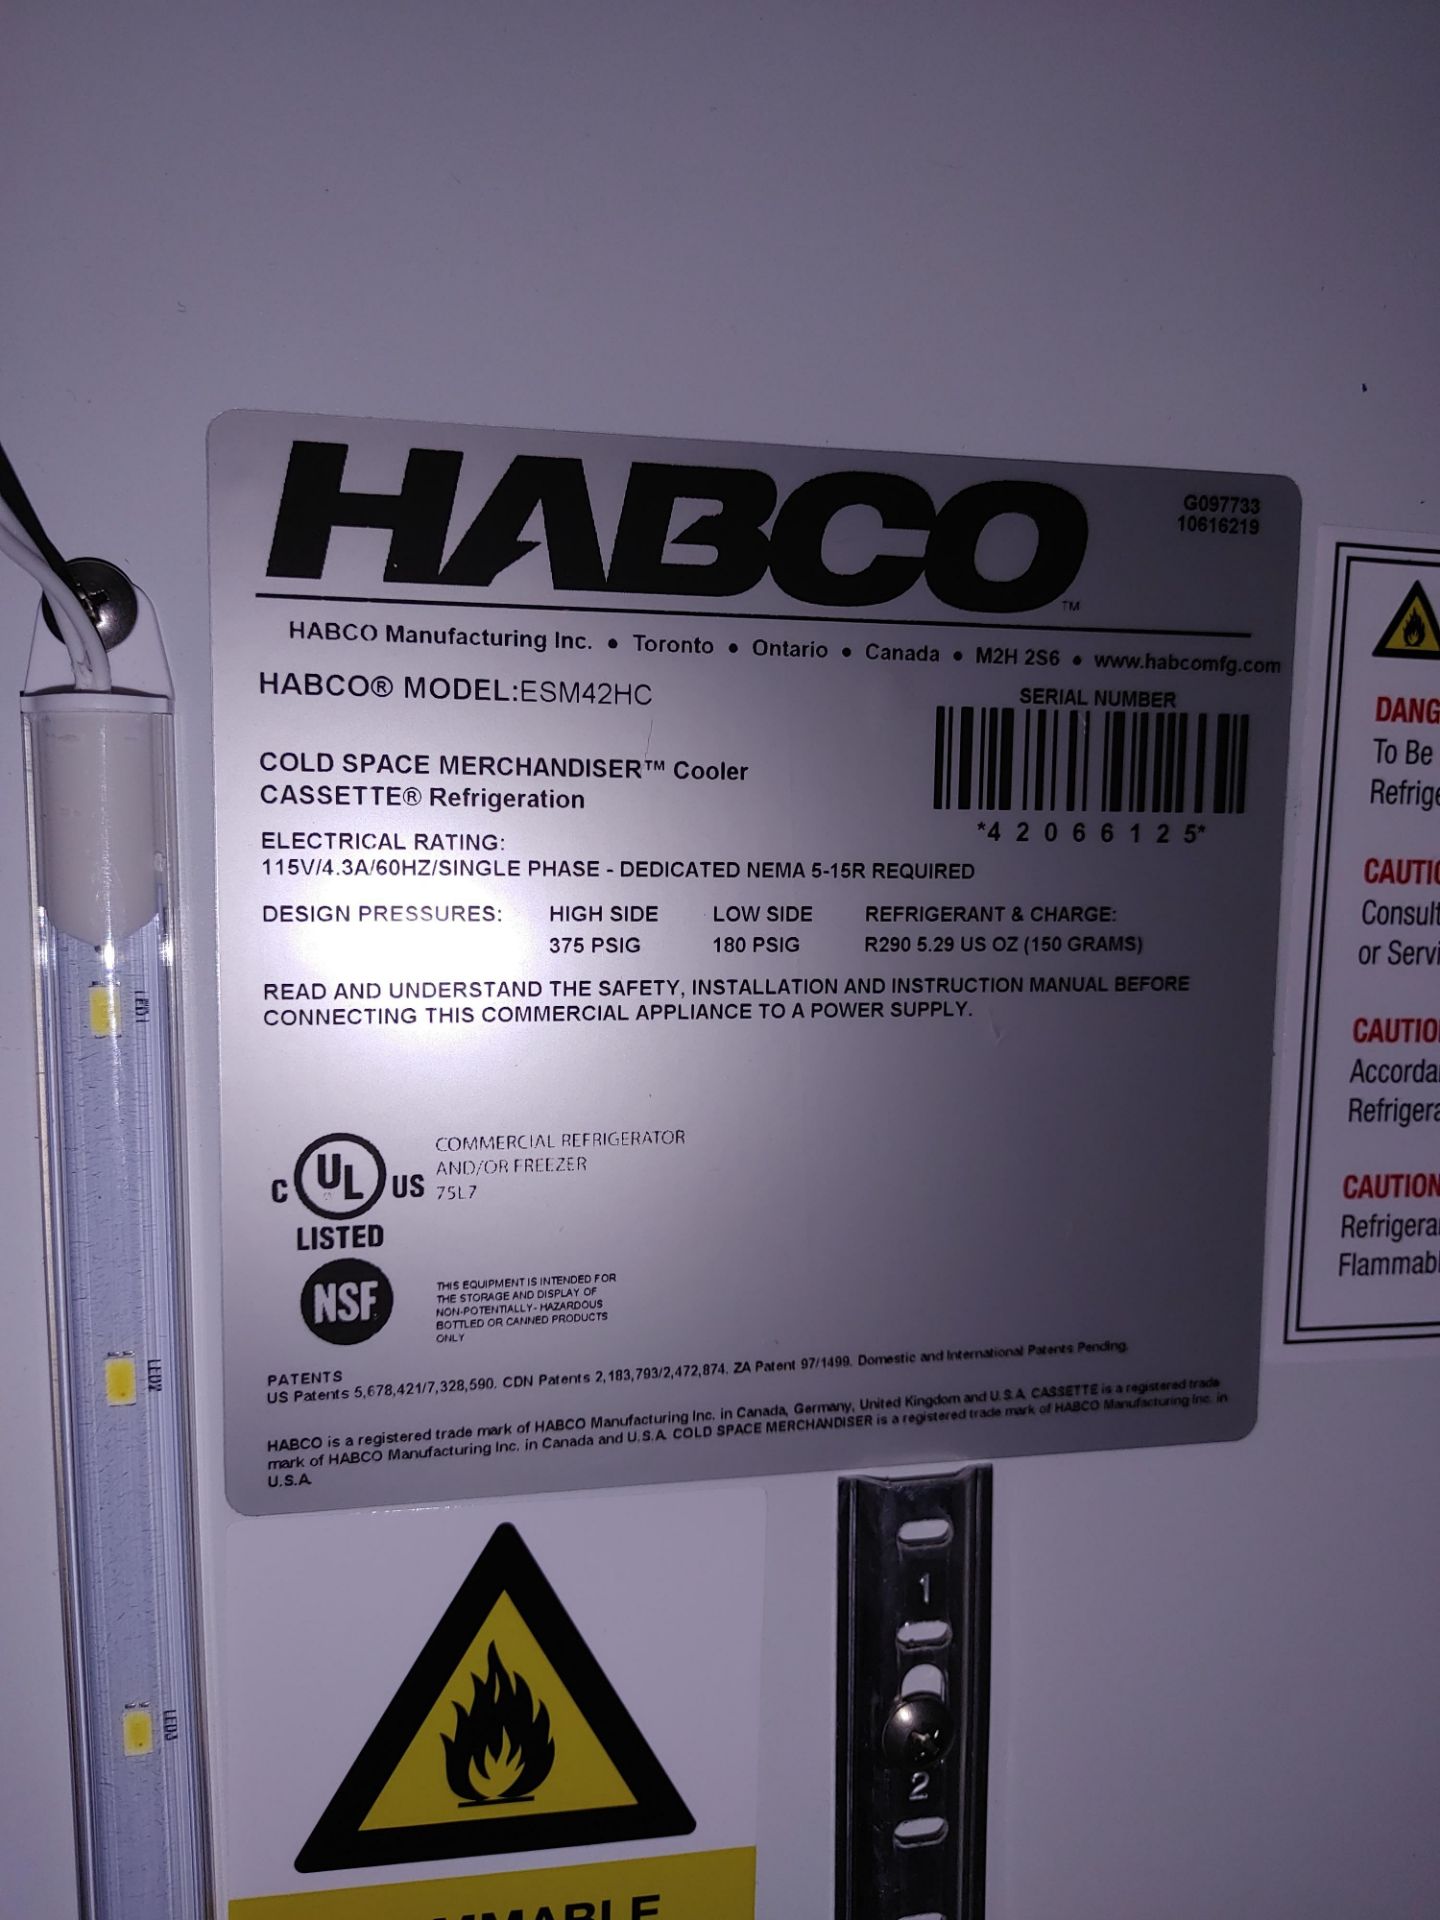 Habco "ESM42HC" 2 Door Refrigerator S/N 42066125 - Image 2 of 2